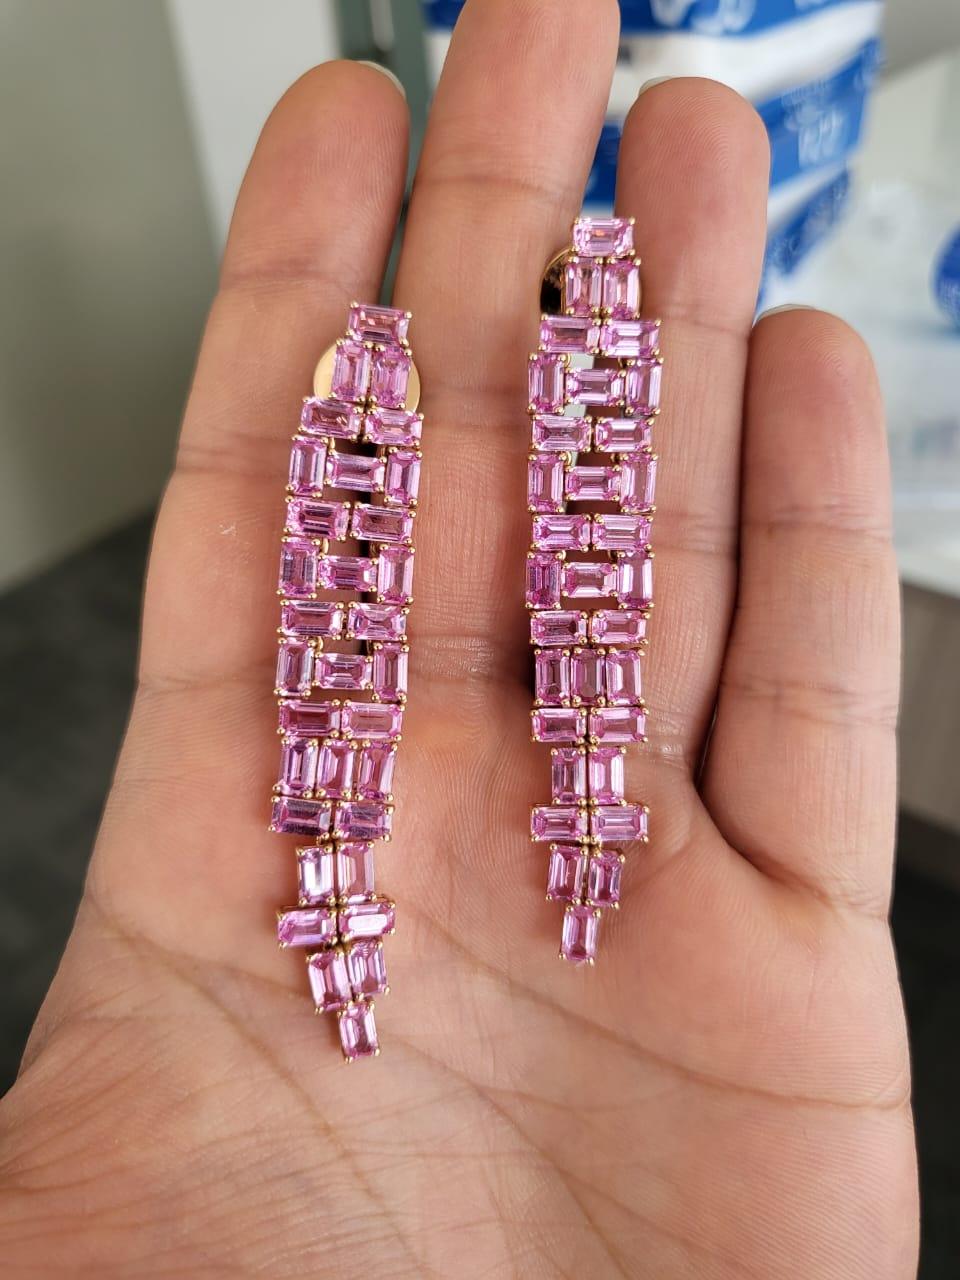 Très belles boucles d'oreilles chandelier en saphir rose serties dans de l'or rose 18 carats. Le poids des saphirs roses est de 20.97 carats. Les saphirs roses sont originaires de Ceylan (Sri Lanka). Le poids net de l'or est de 15.83 grammes. Les